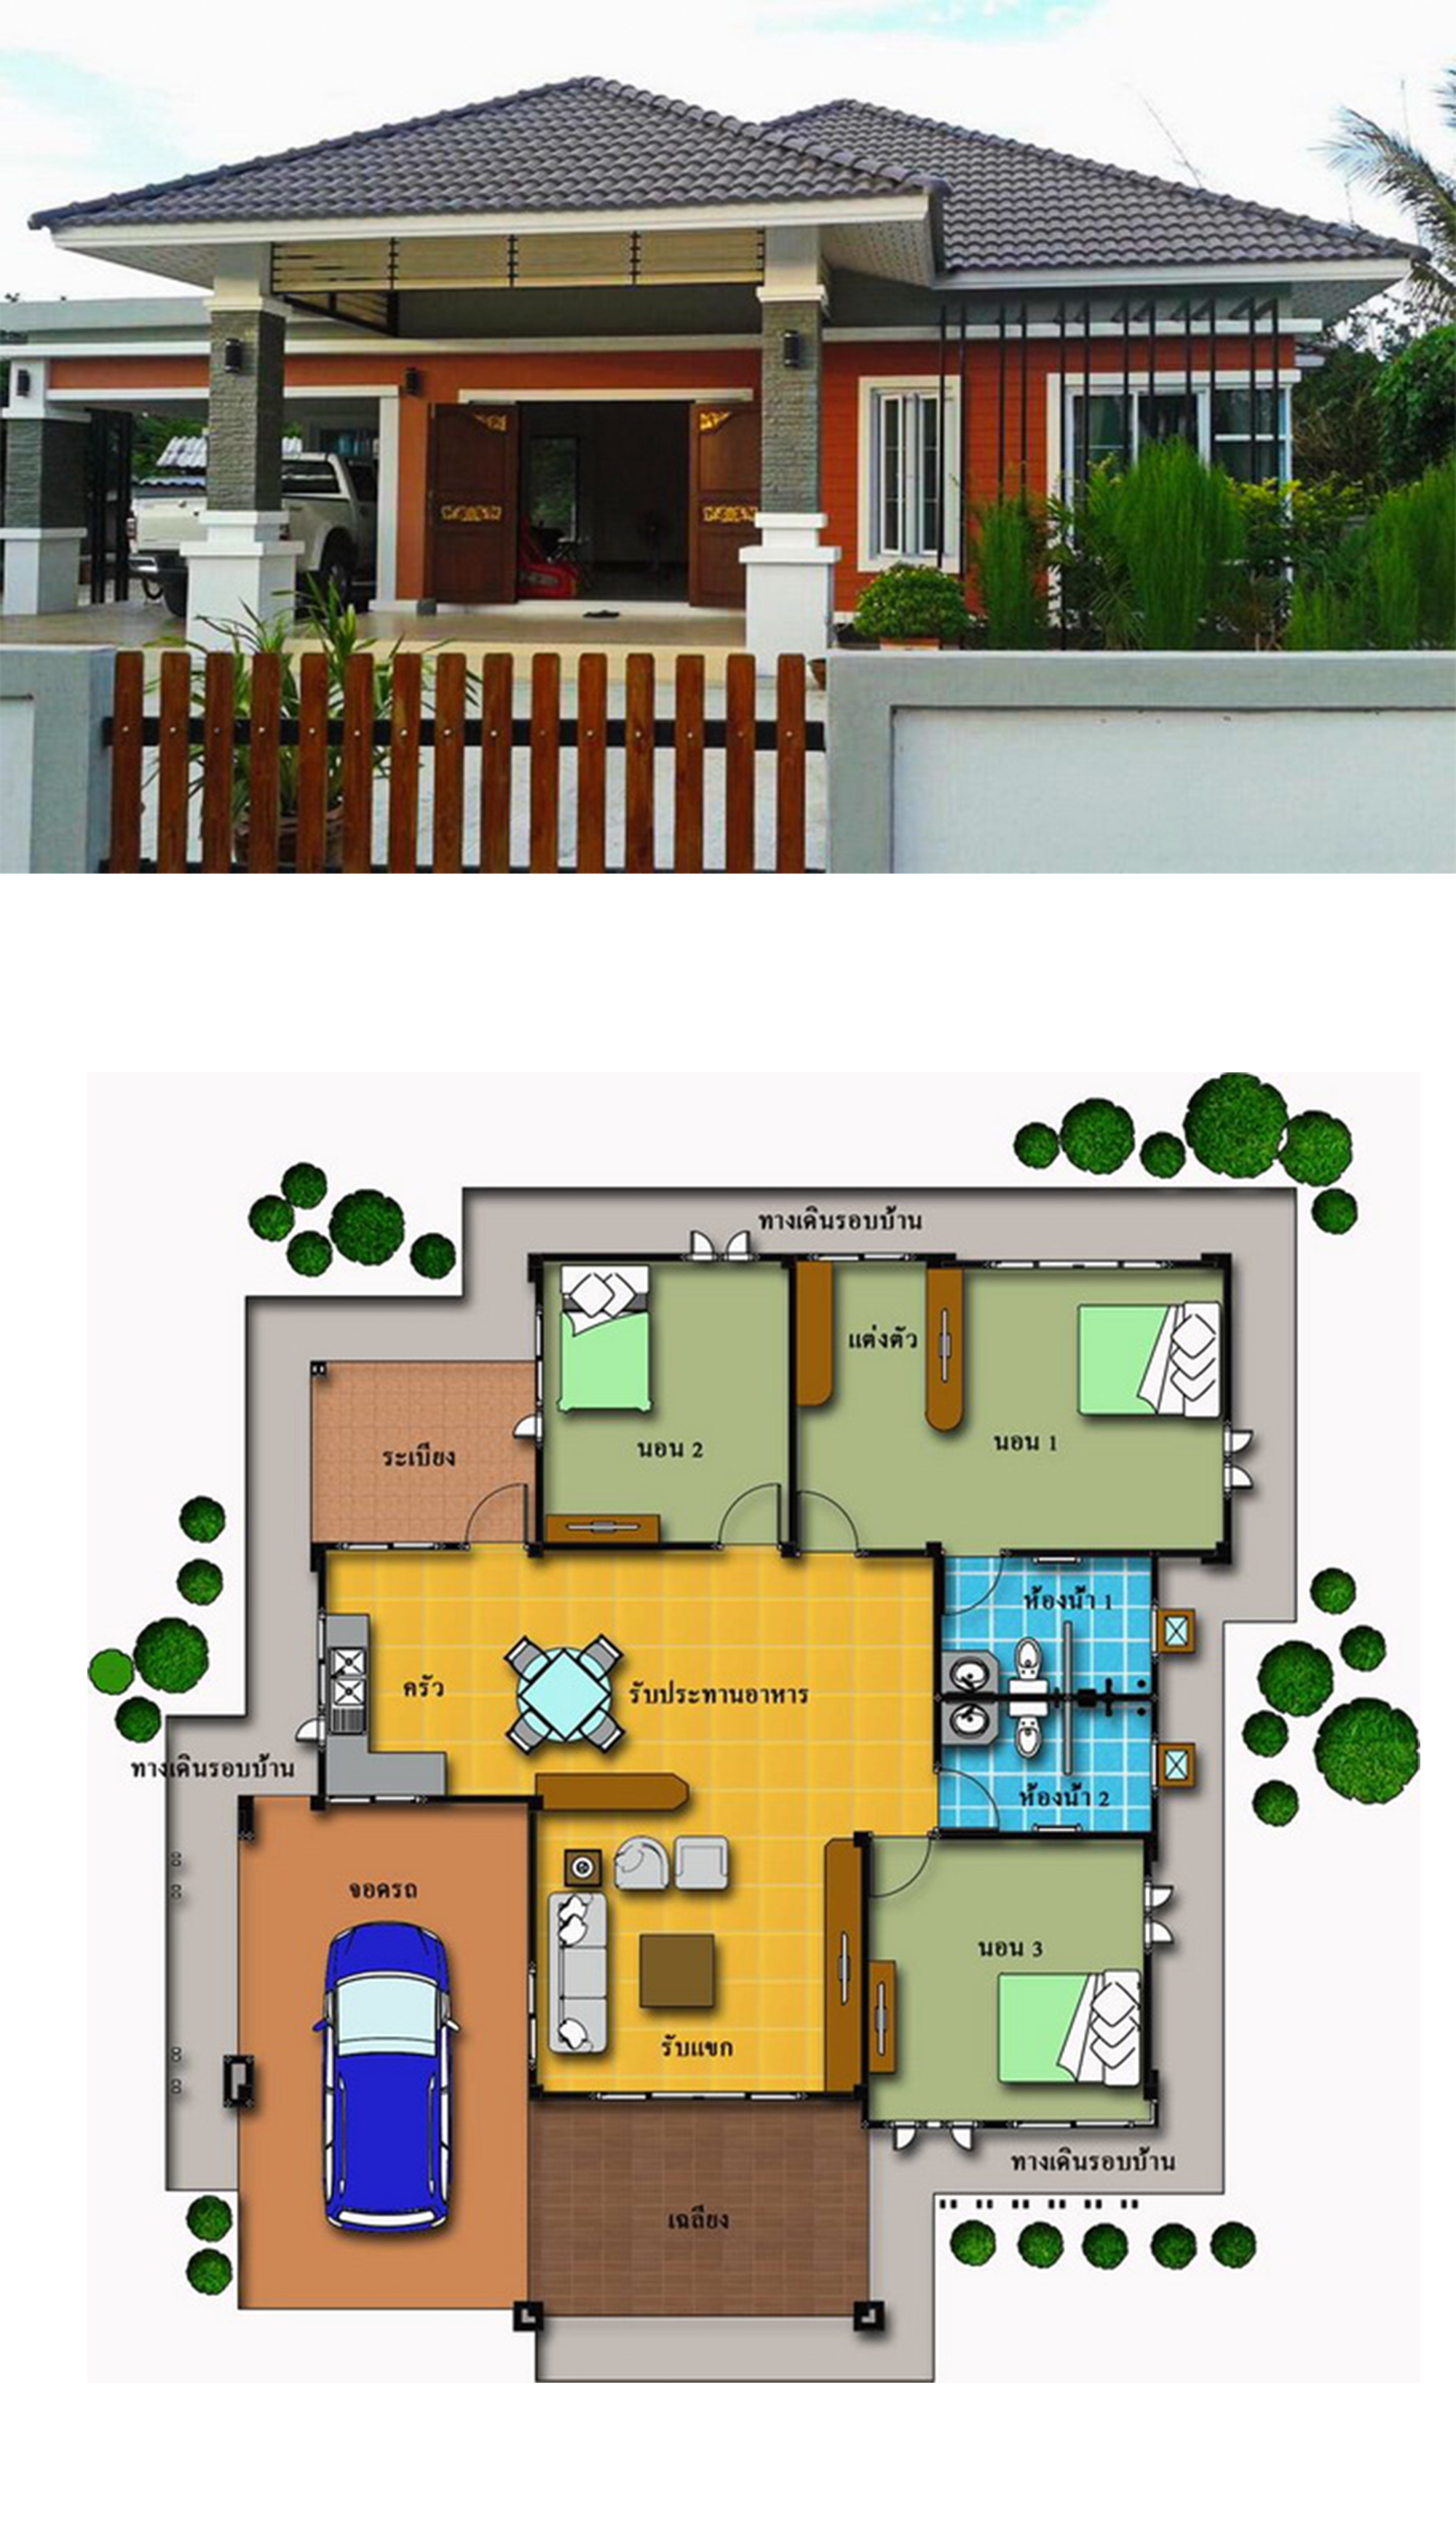 3 Bedrooms House Design Plan 15X20M House Plans 3D